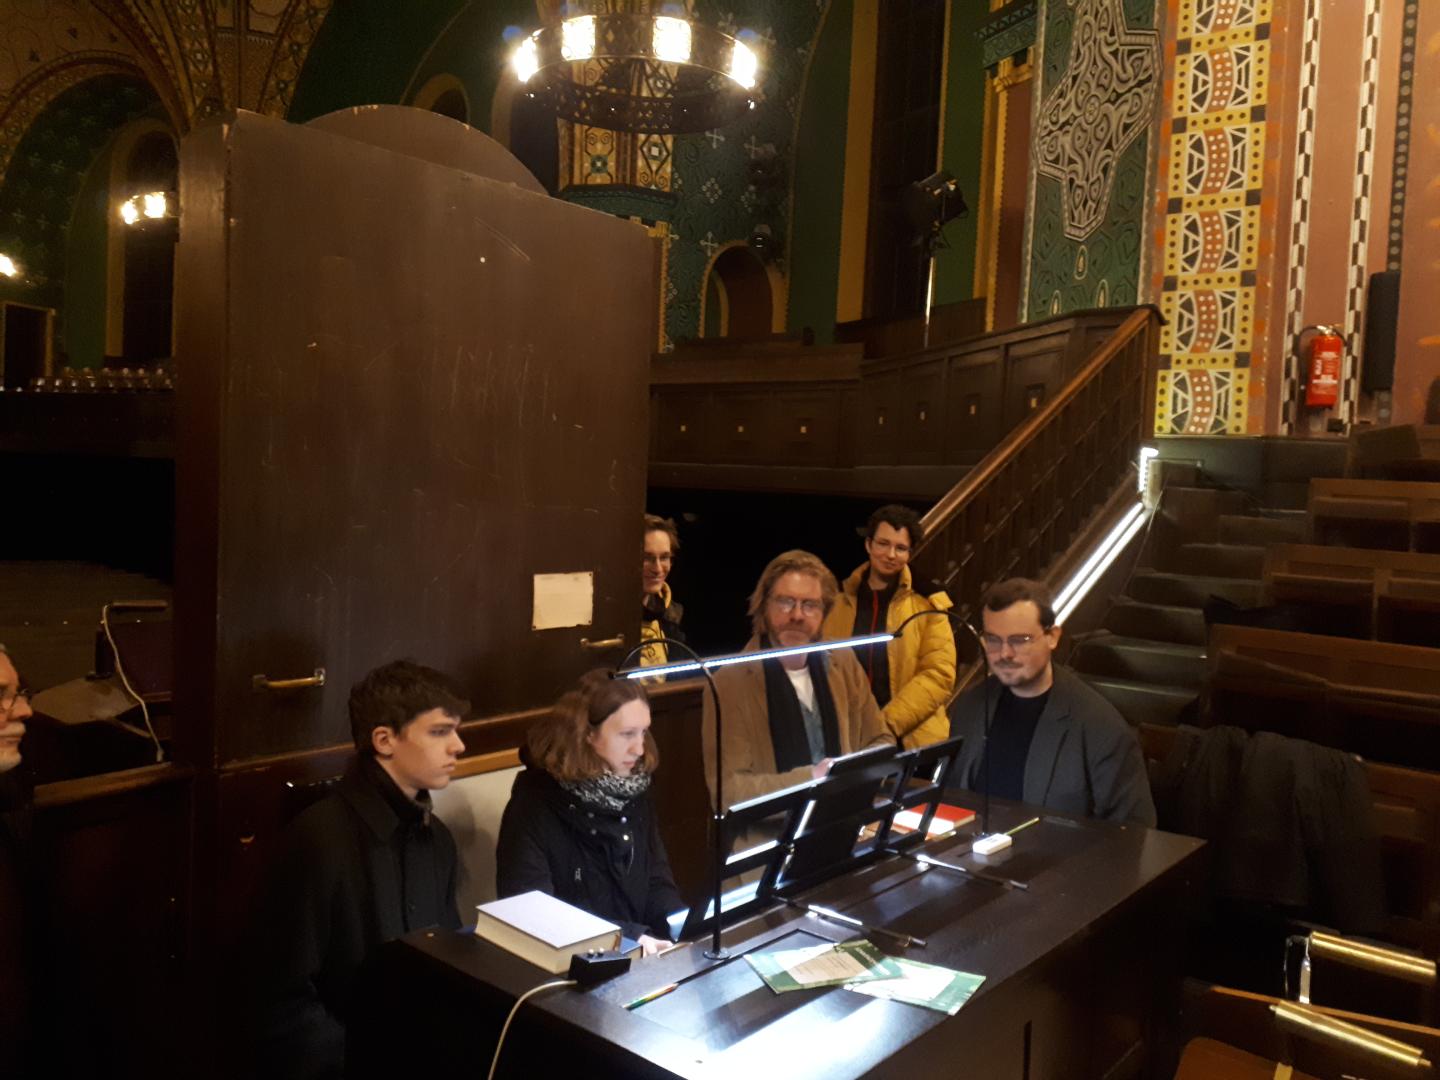 Unterrichtssituation an der Orgel: Studierende stehen um den Spieltisch herum.